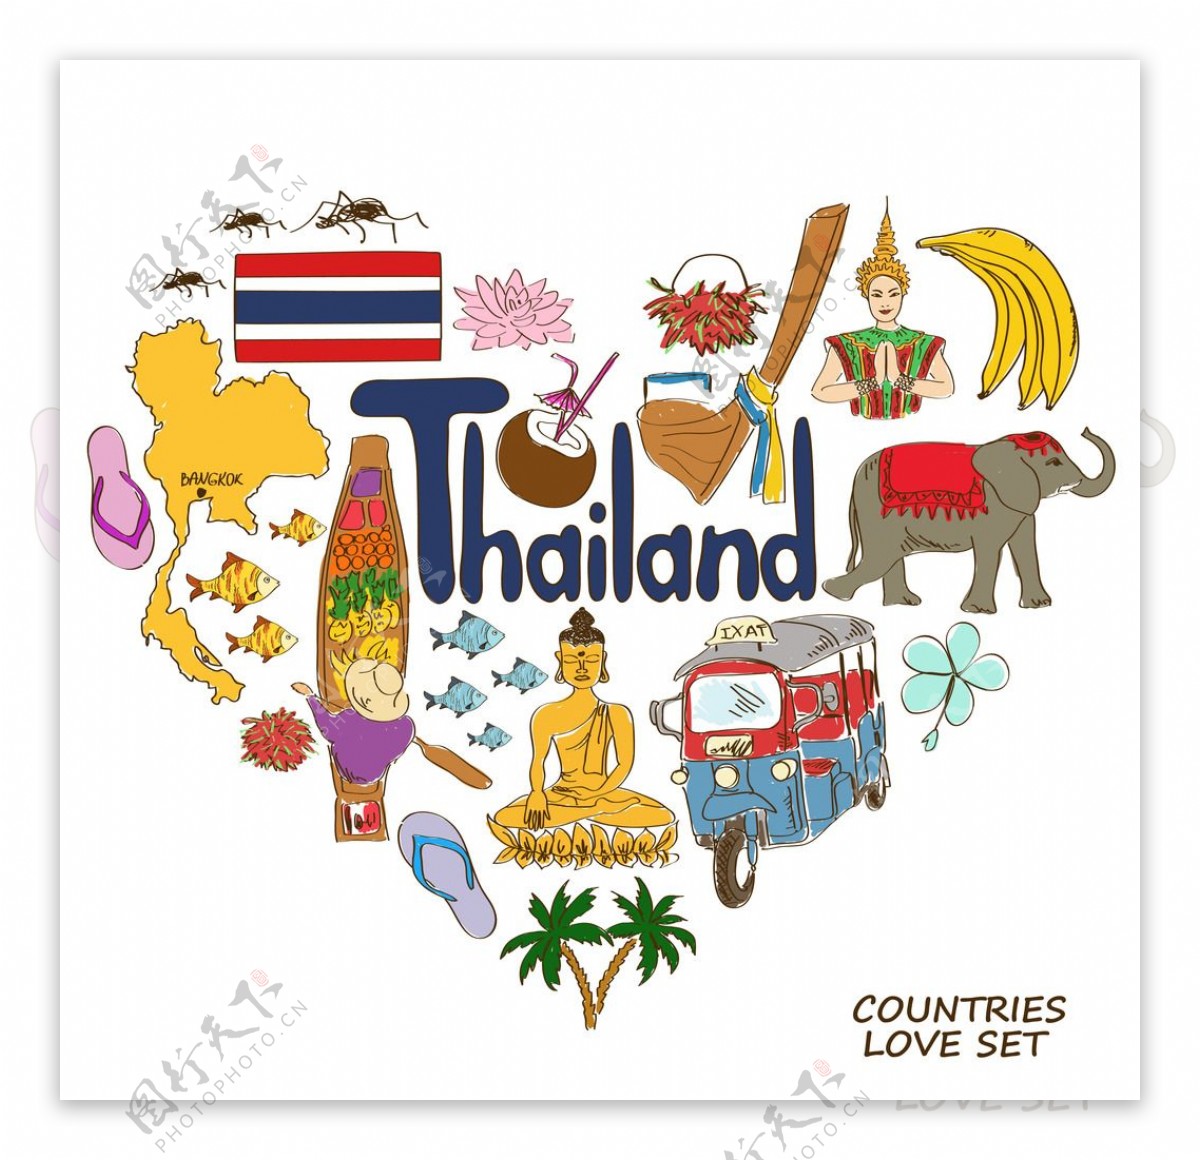 泰国国家元素